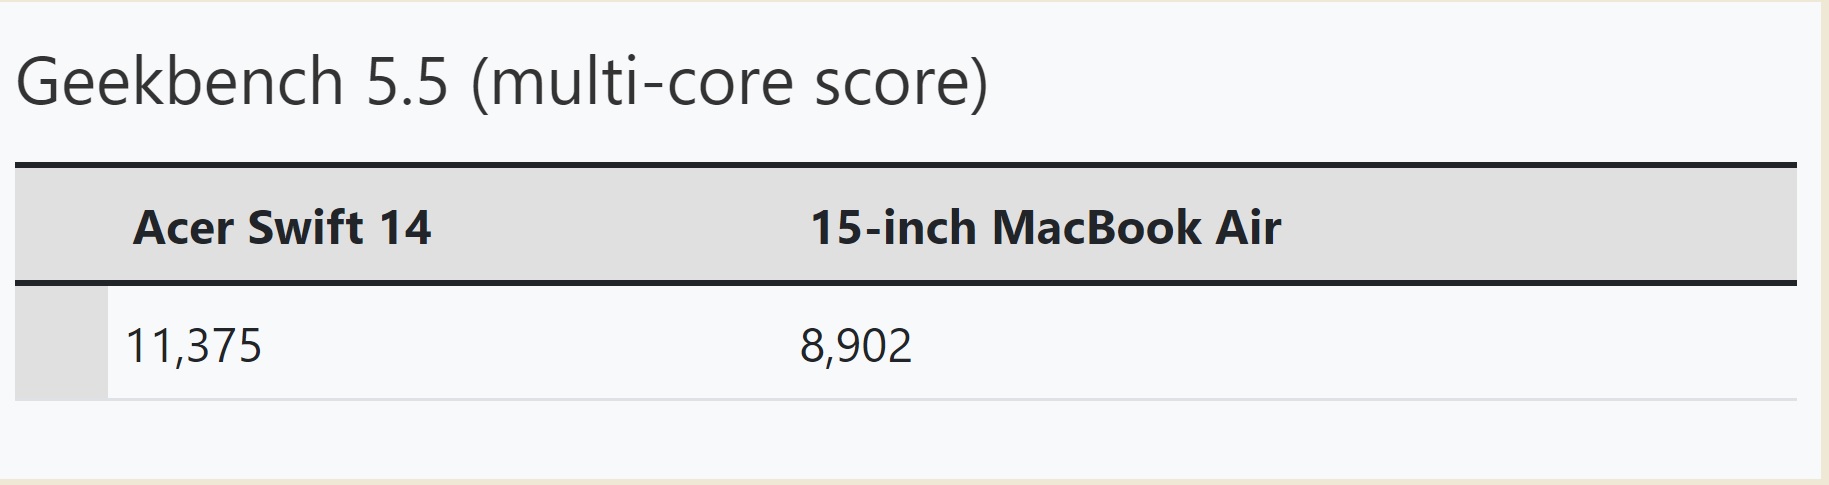 Skor Geekbench 5.5 untuk Swift 14 dan MacBook air